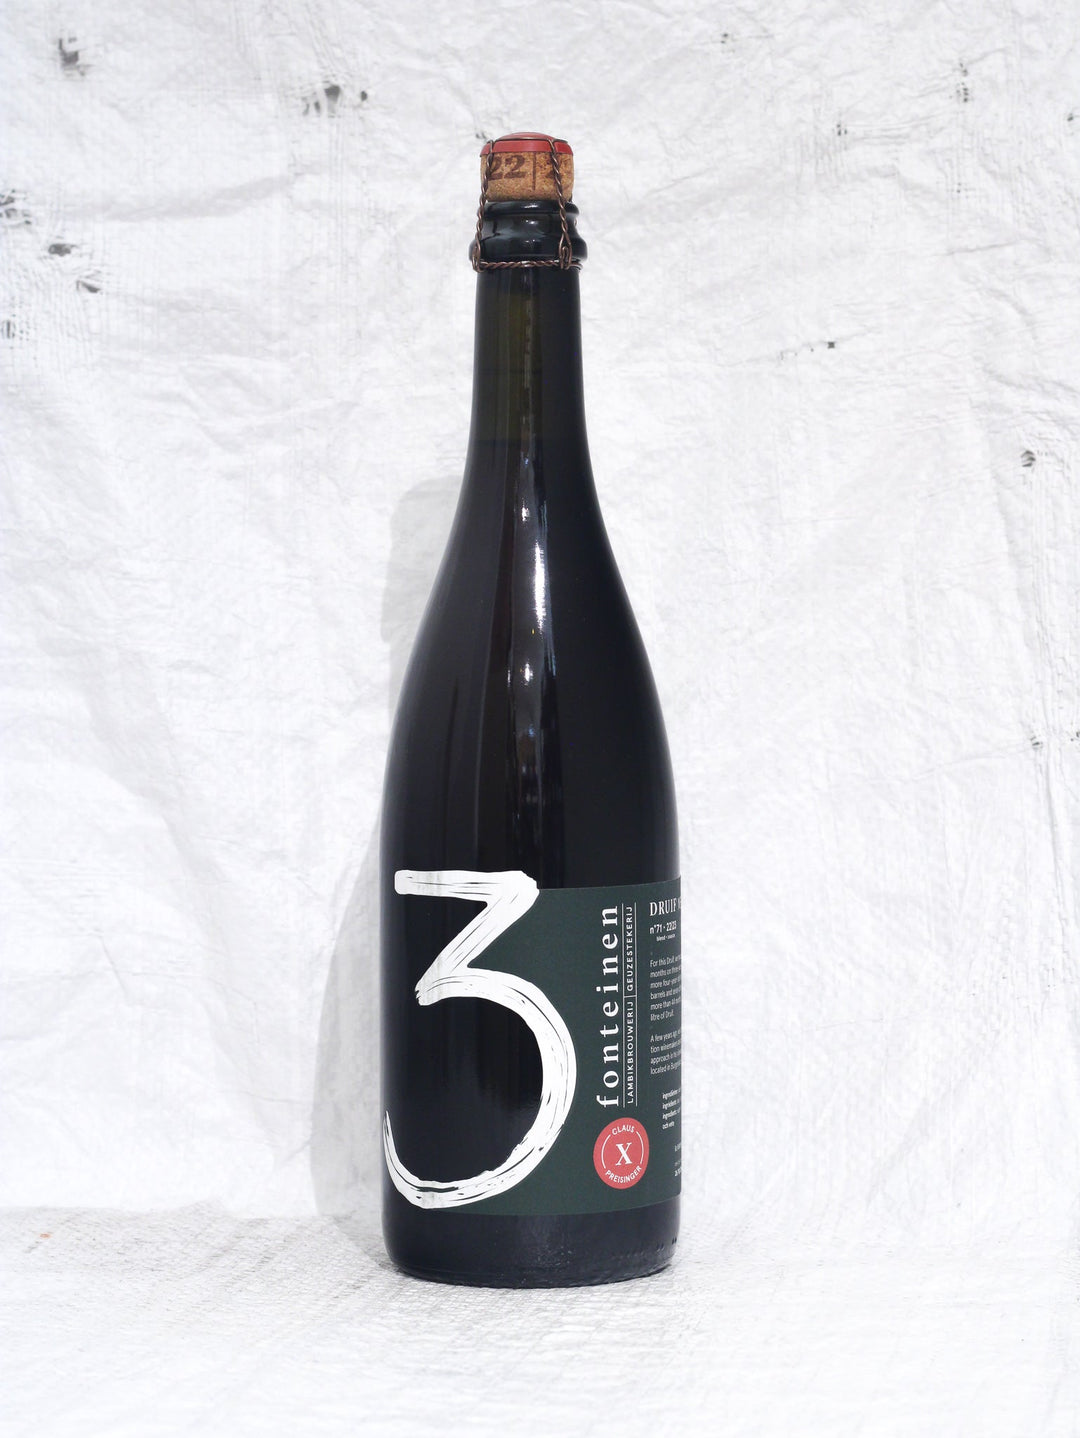 Druif Merlot X Claus Preisinger 0,75L Wein von 3 Fonteinen